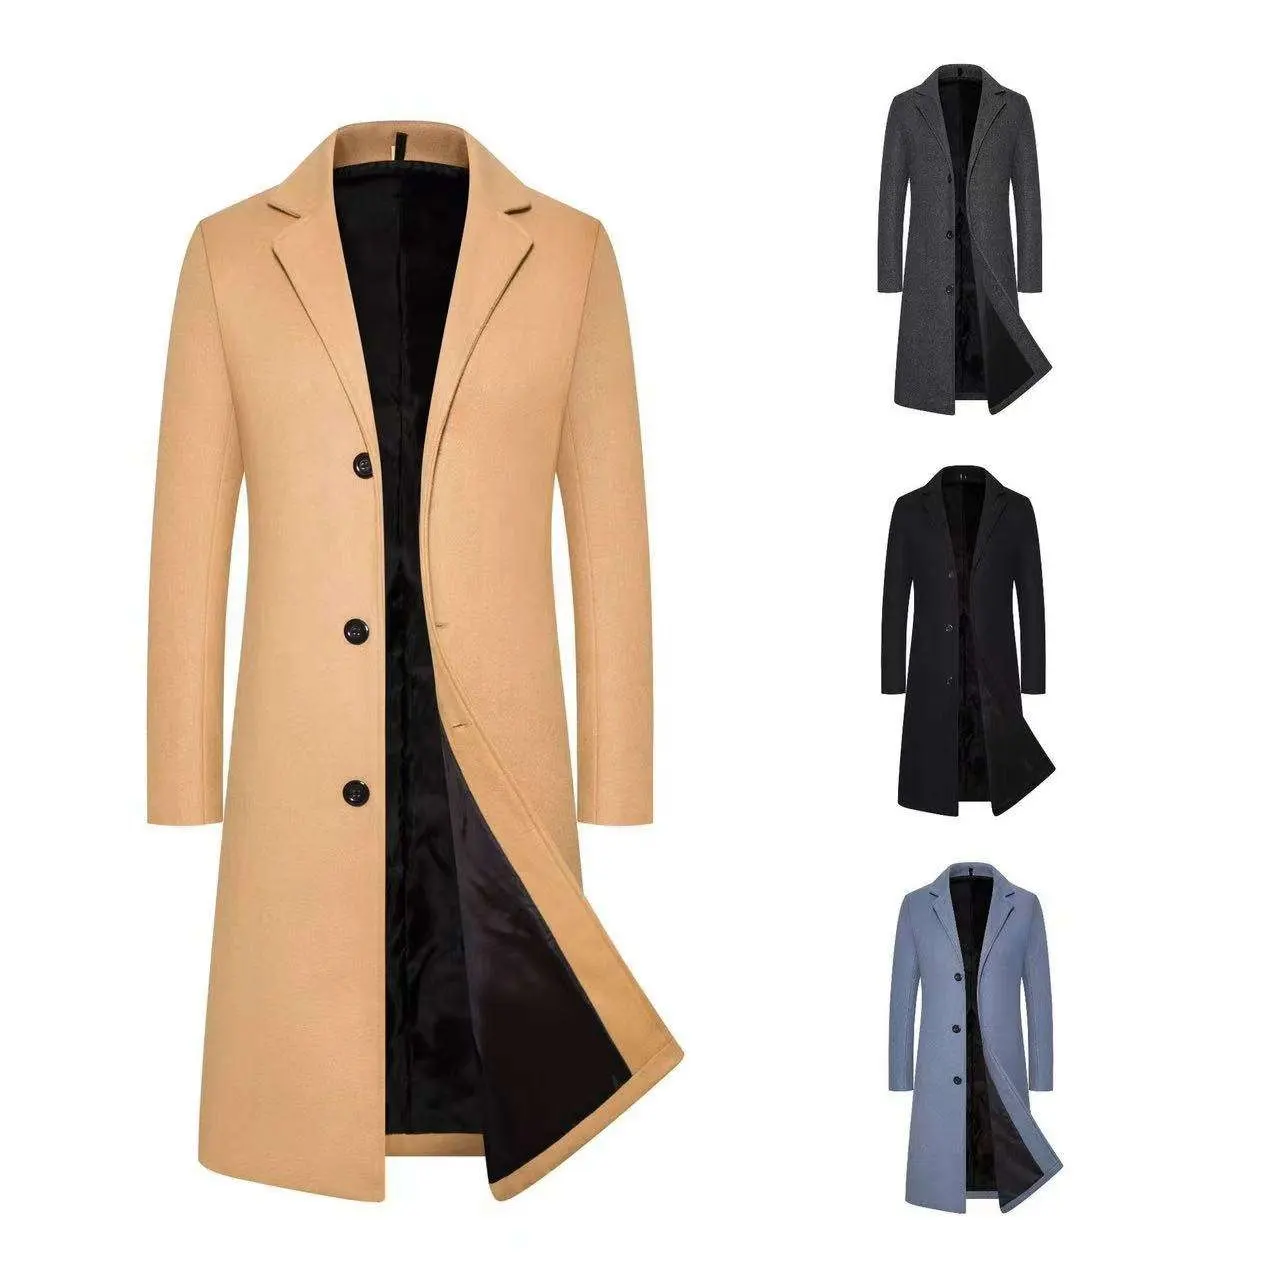 가을 겨울 새로운 패션 턴다운 칼라 단색 오버 코트 심플 버튼 캐주얼 남성 코트 긴 길이 모직 캐주얼 코트